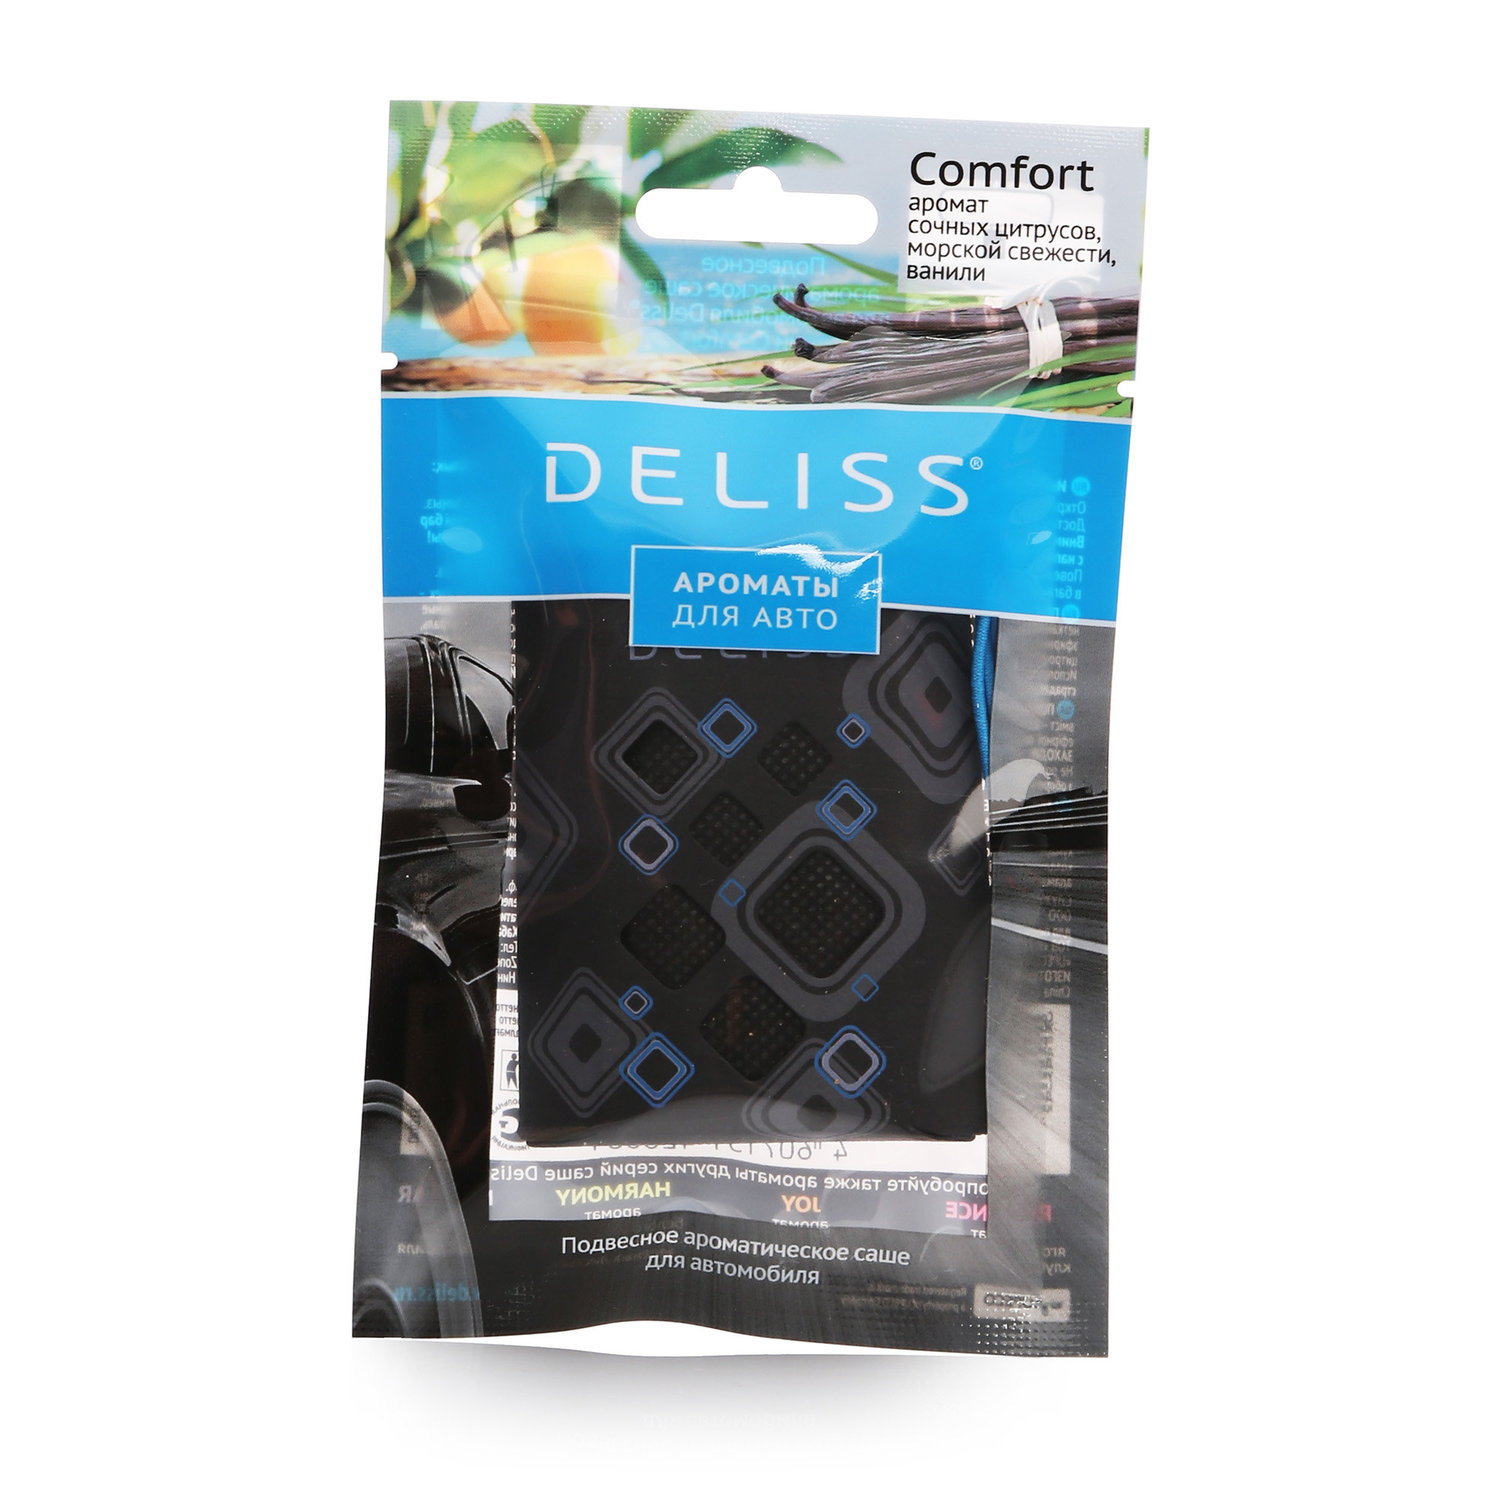 Deliss подвесное ароматическое саше для автомобиля аромат цитрусовые/морская свежесть/ваниль 7,8г